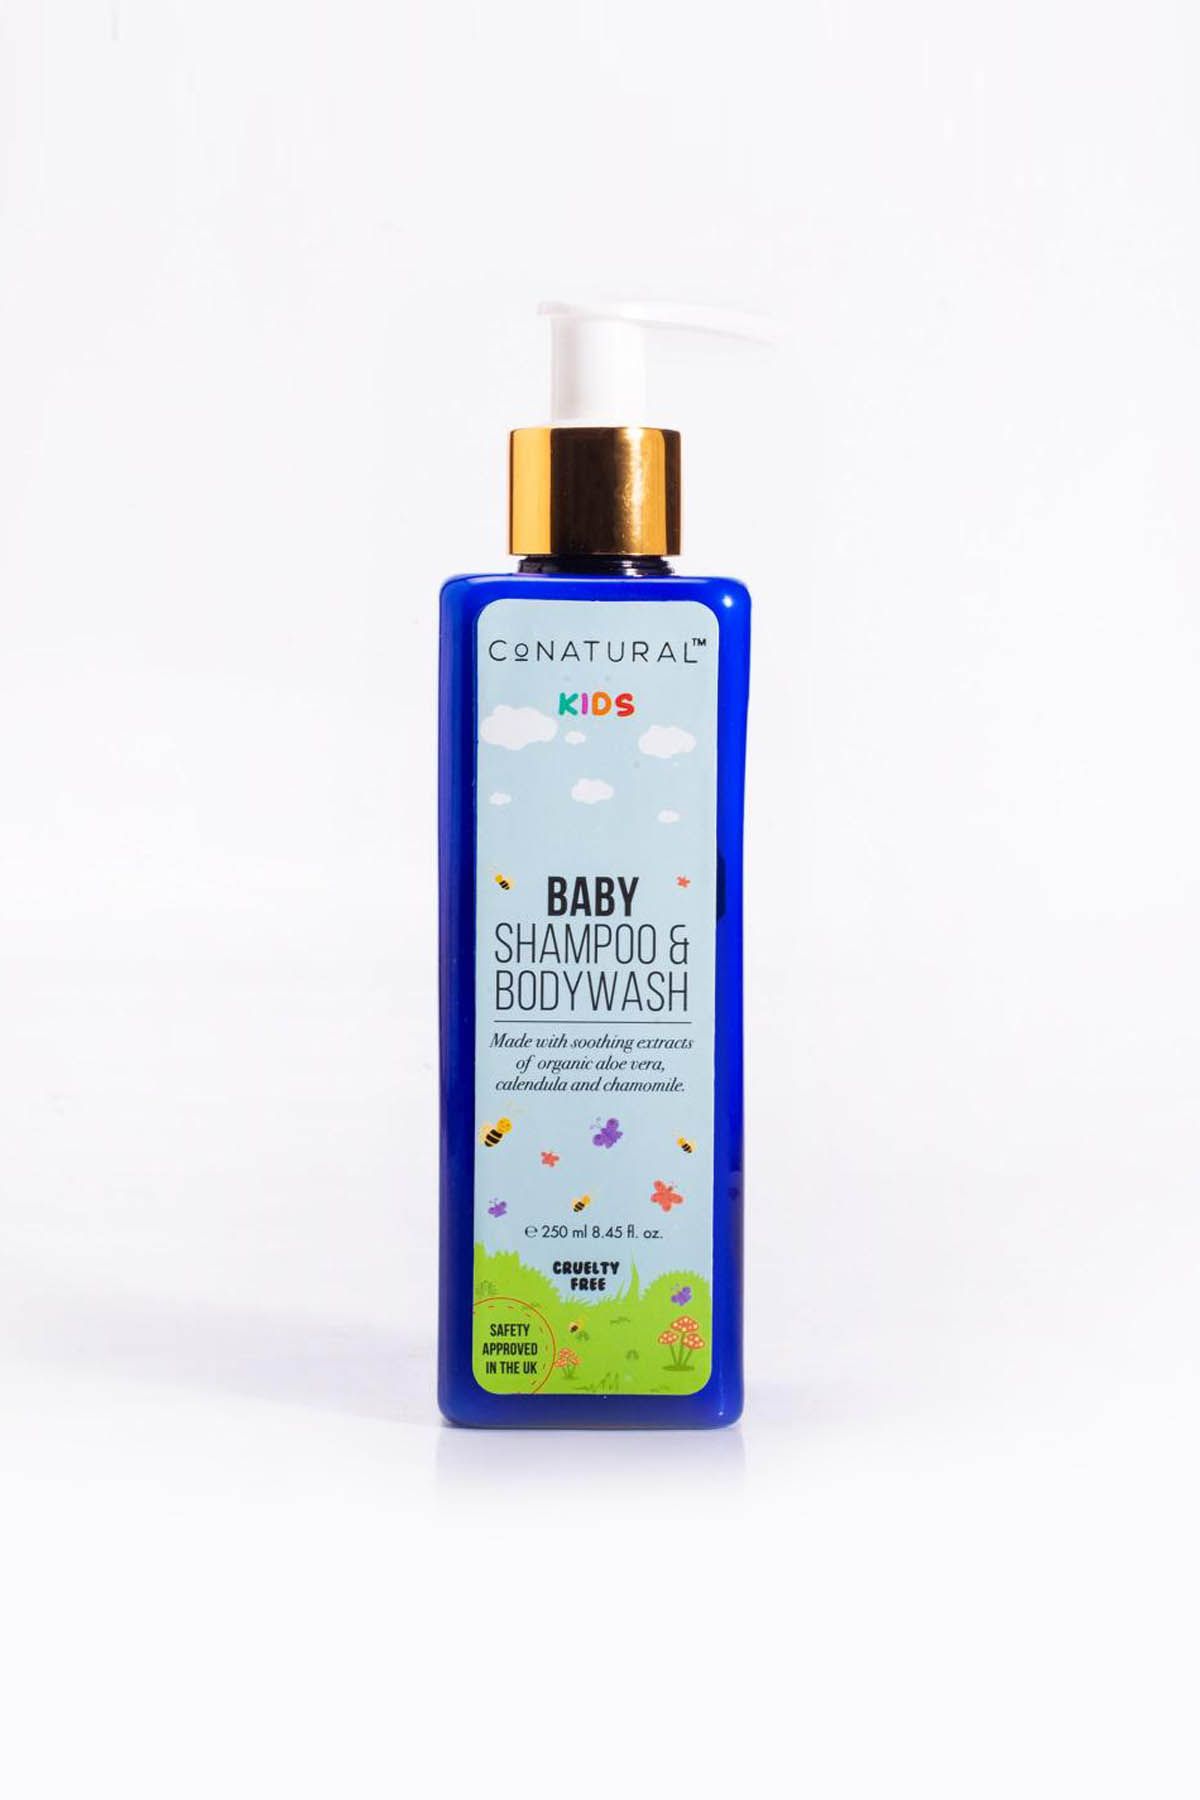 Baby Shampoo & Bodywash